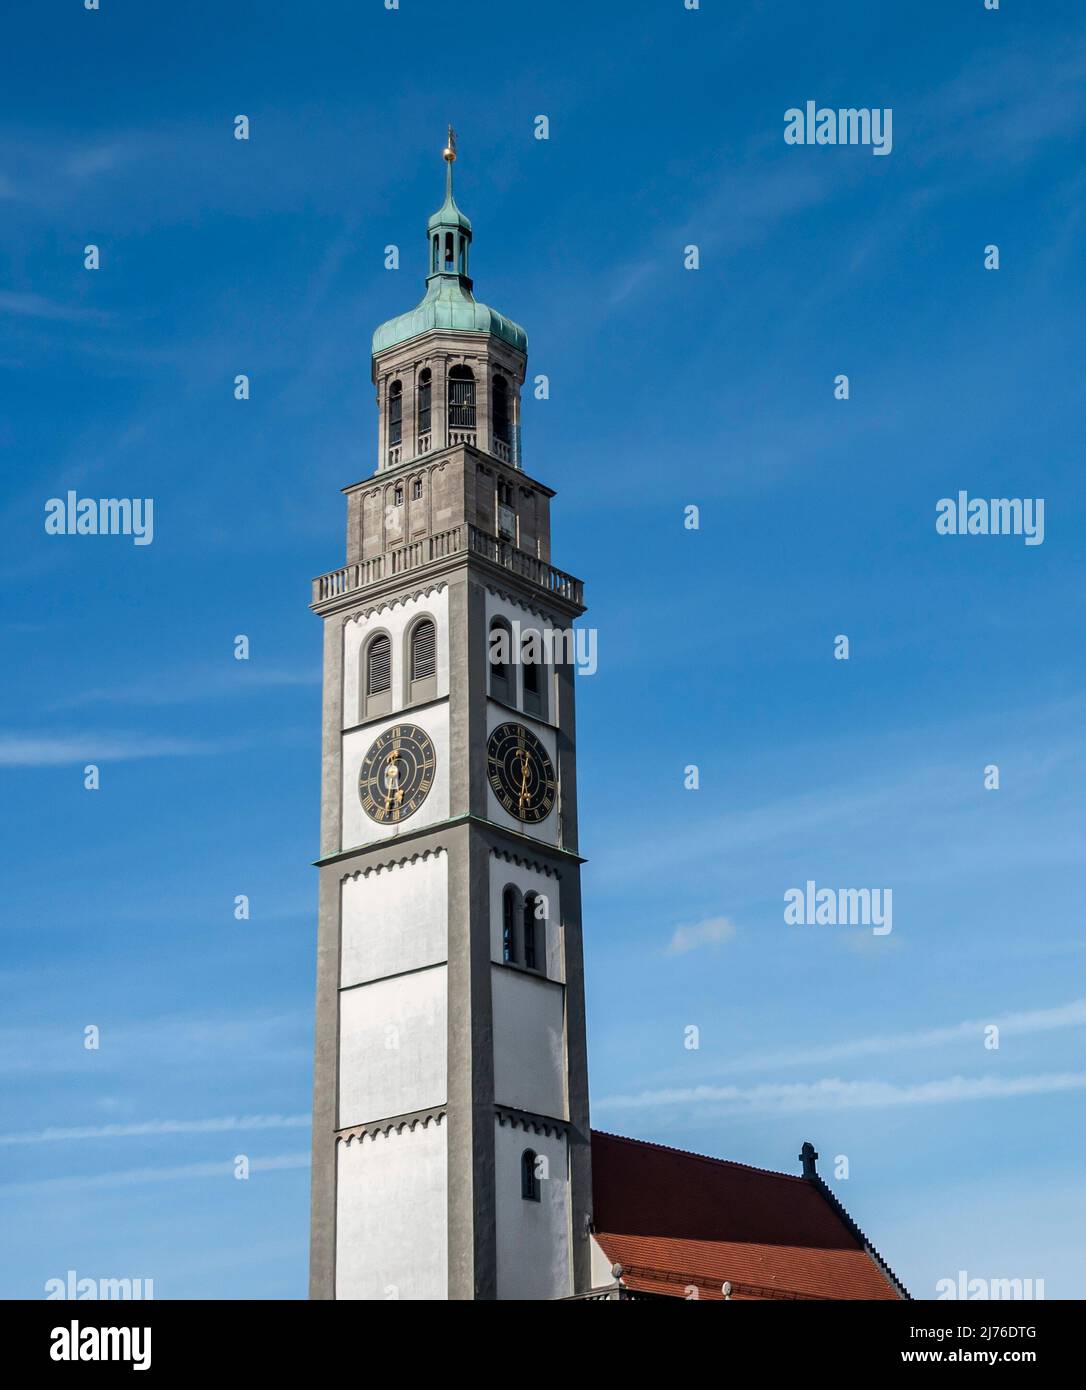 Allemagne, Augsbourg, le Perlachturm de 70 m de haut fut construit au 10th siècle comme tour de guet. Aujourd'hui, en ensemble avec l'hôtel de ville voisin d'Augsbourg, c'est un point de repère de la ville et est utilisé, entre autres choses, comme tour d'observation. Banque D'Images